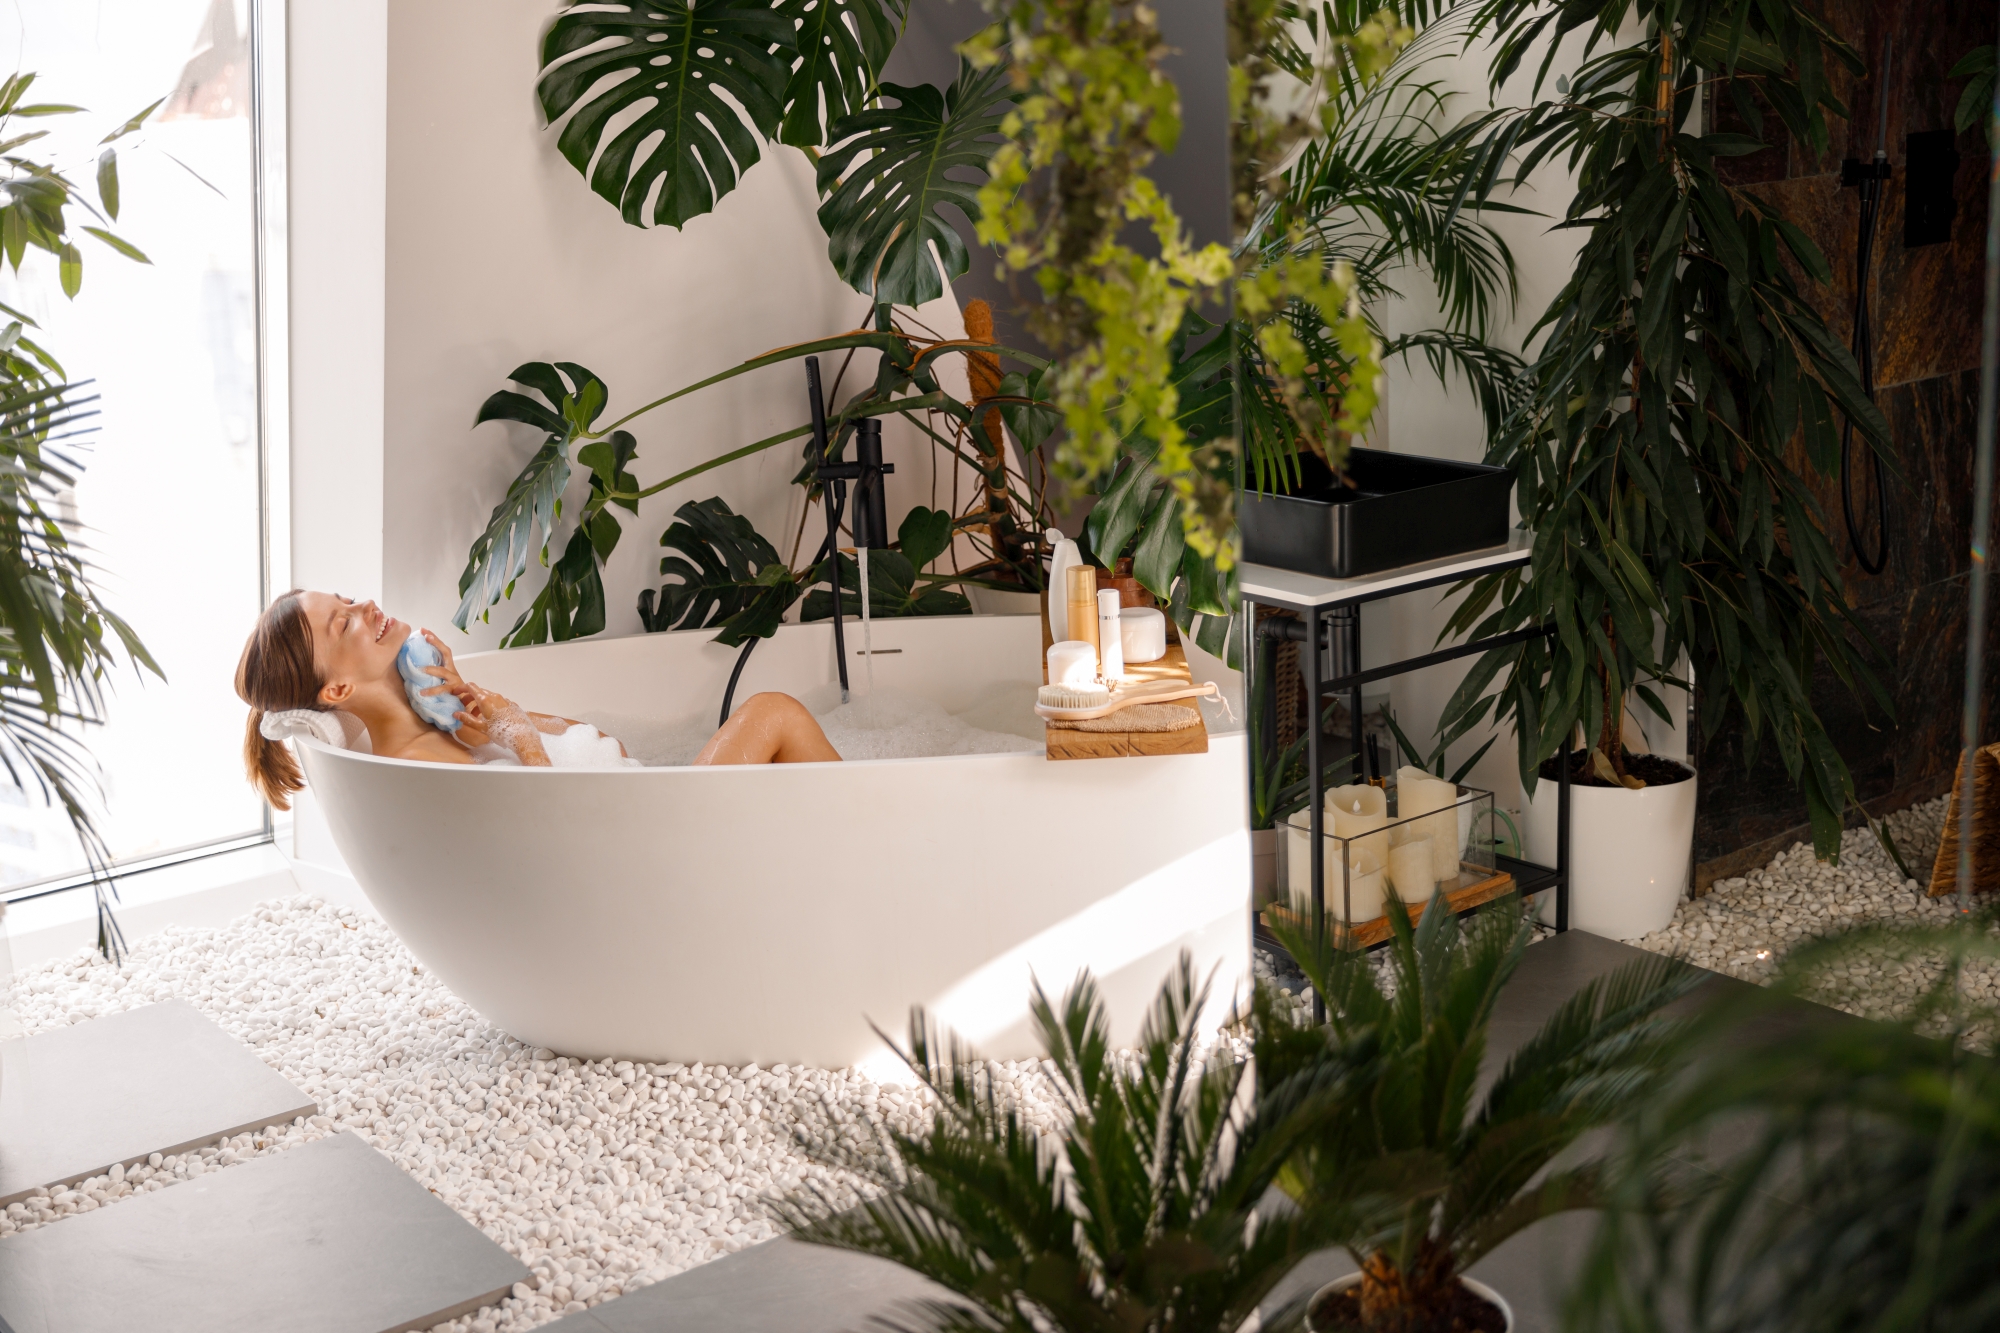 Nowoczesne wnętrze łazienki ozdobione tropikalnymi roślinami